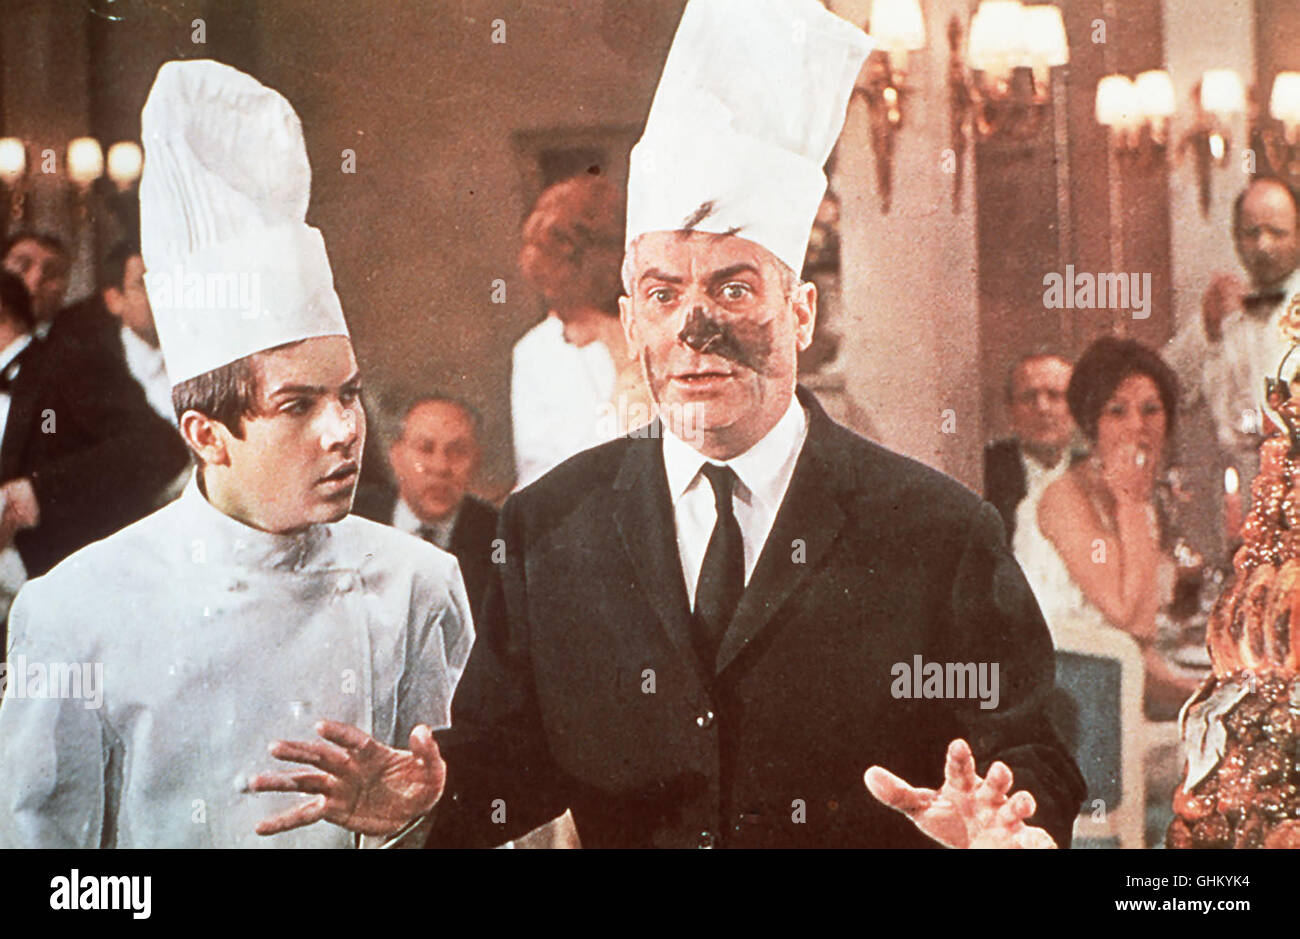 Monsieur Septime (LOUIS DE FUNES) ist der Besitzer eines Pariser Gourmet-Tempels. Um die Qualität seines Restaurants zu überprüfen, pflegt er des öfteren sein eigenes Lokal inkognito zu besuchen und sich dabei als besonders schwieriger und heikler Gast zu geben. Als der südamerikanische Präsident Novales seinen Besuch ansagt, kommt es zum Chaos: Der Koch serviert seine 'Bombe surprise' und löscht dabei das Licht, danach ist der Präsident spurlos verschwunden. Nun beginnt eine wilde Jagd. Regie: Jacques Besnard aka. Le Grand Restaurant Stock Photo